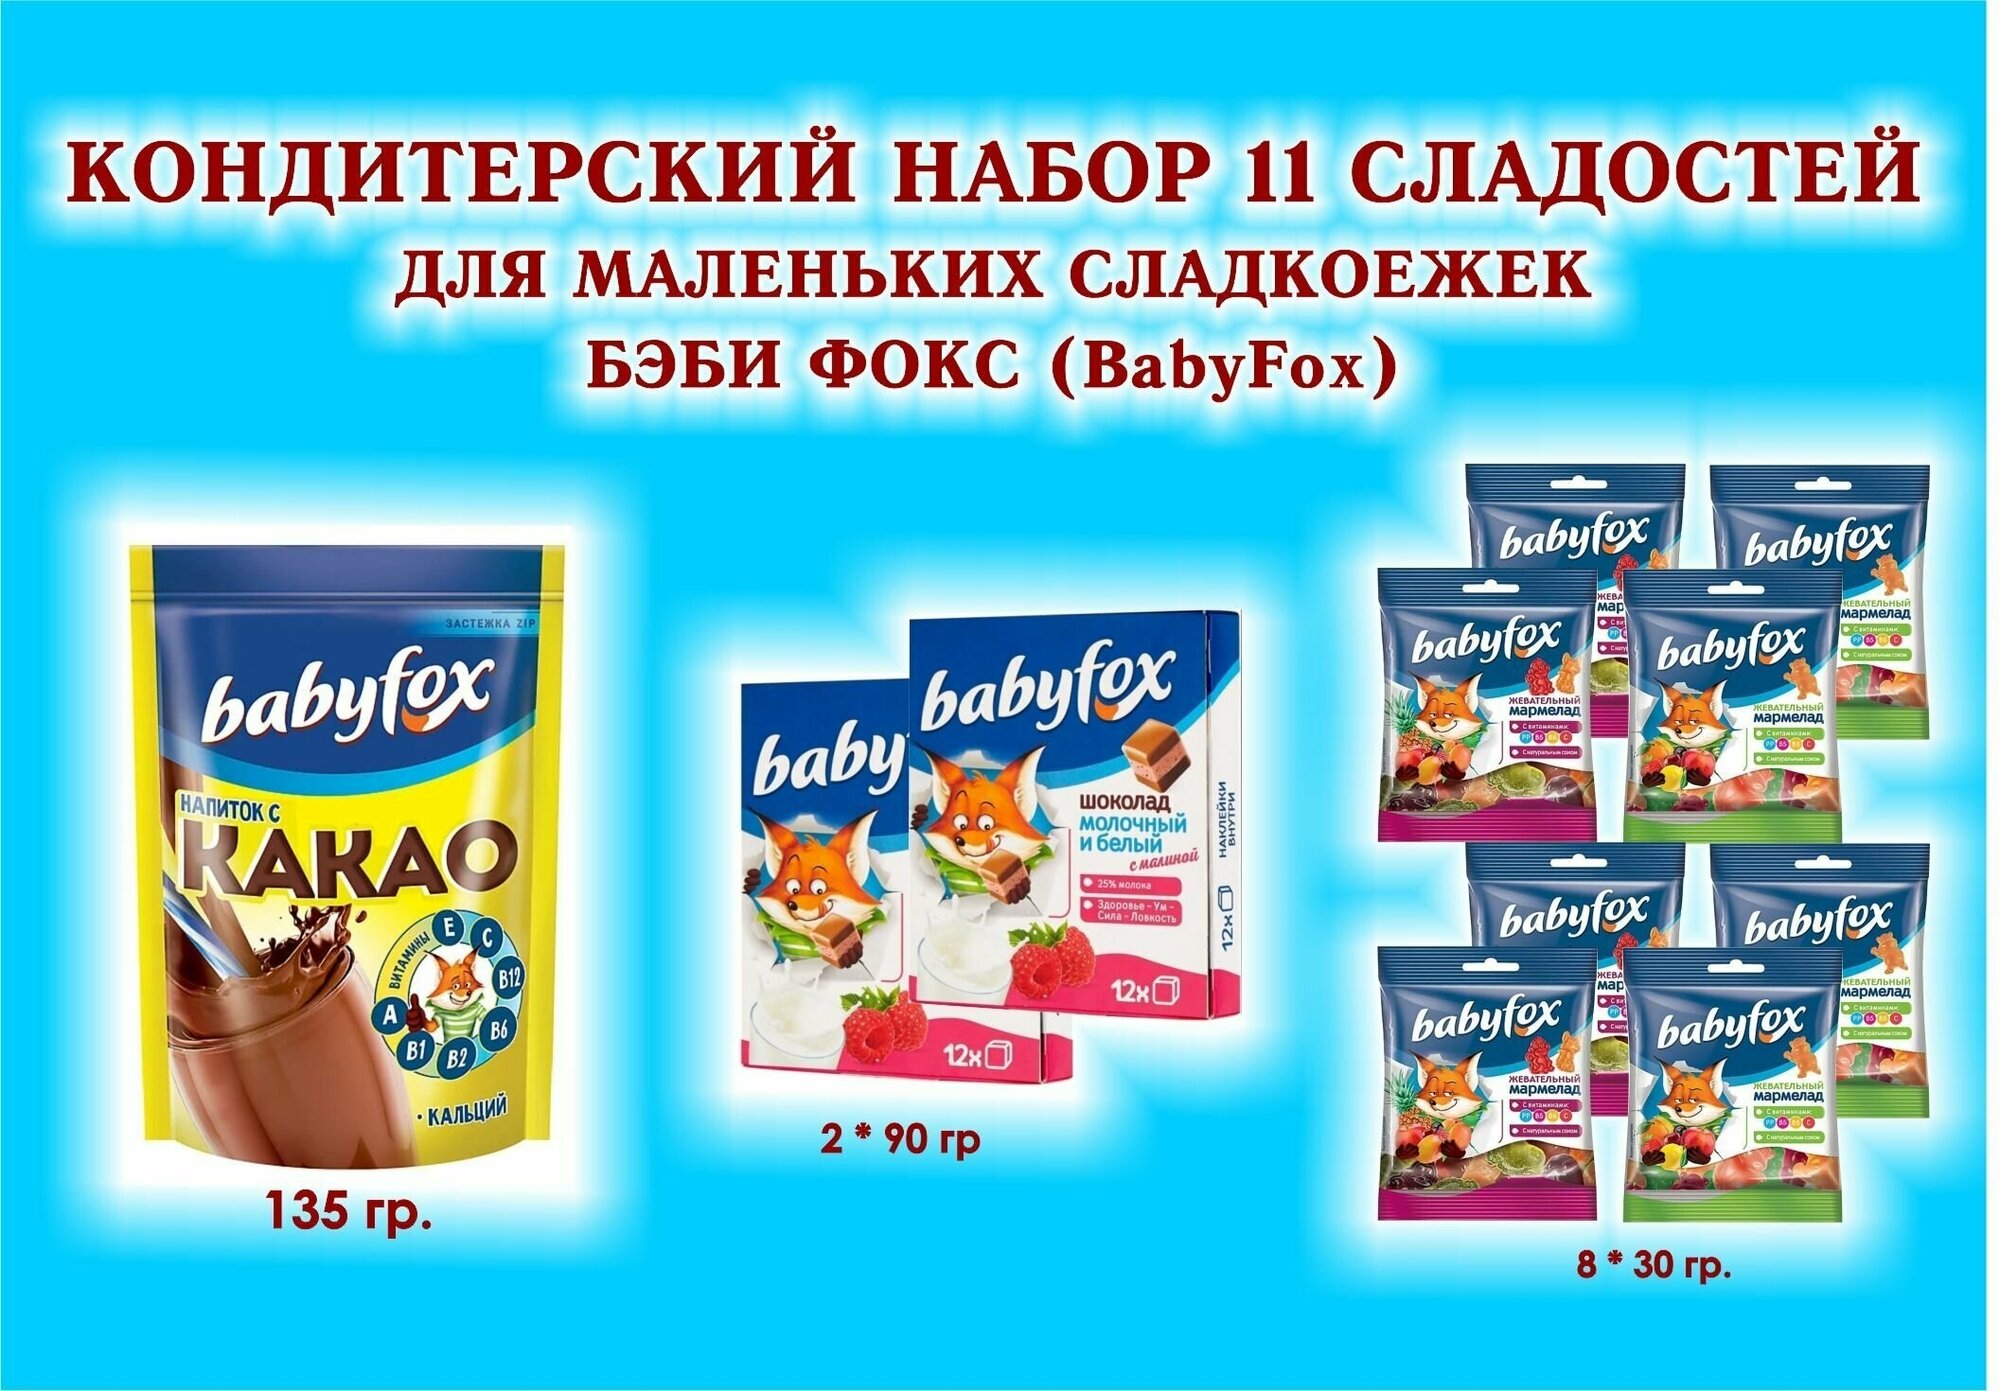 Набор"BabyFox"- Шоколад молочный с малиной 2*90 гр.+ Мармелад жевательный 8*30 гр.+какао 1*135 гр.-11 сладостей для маленьких сладкоежек